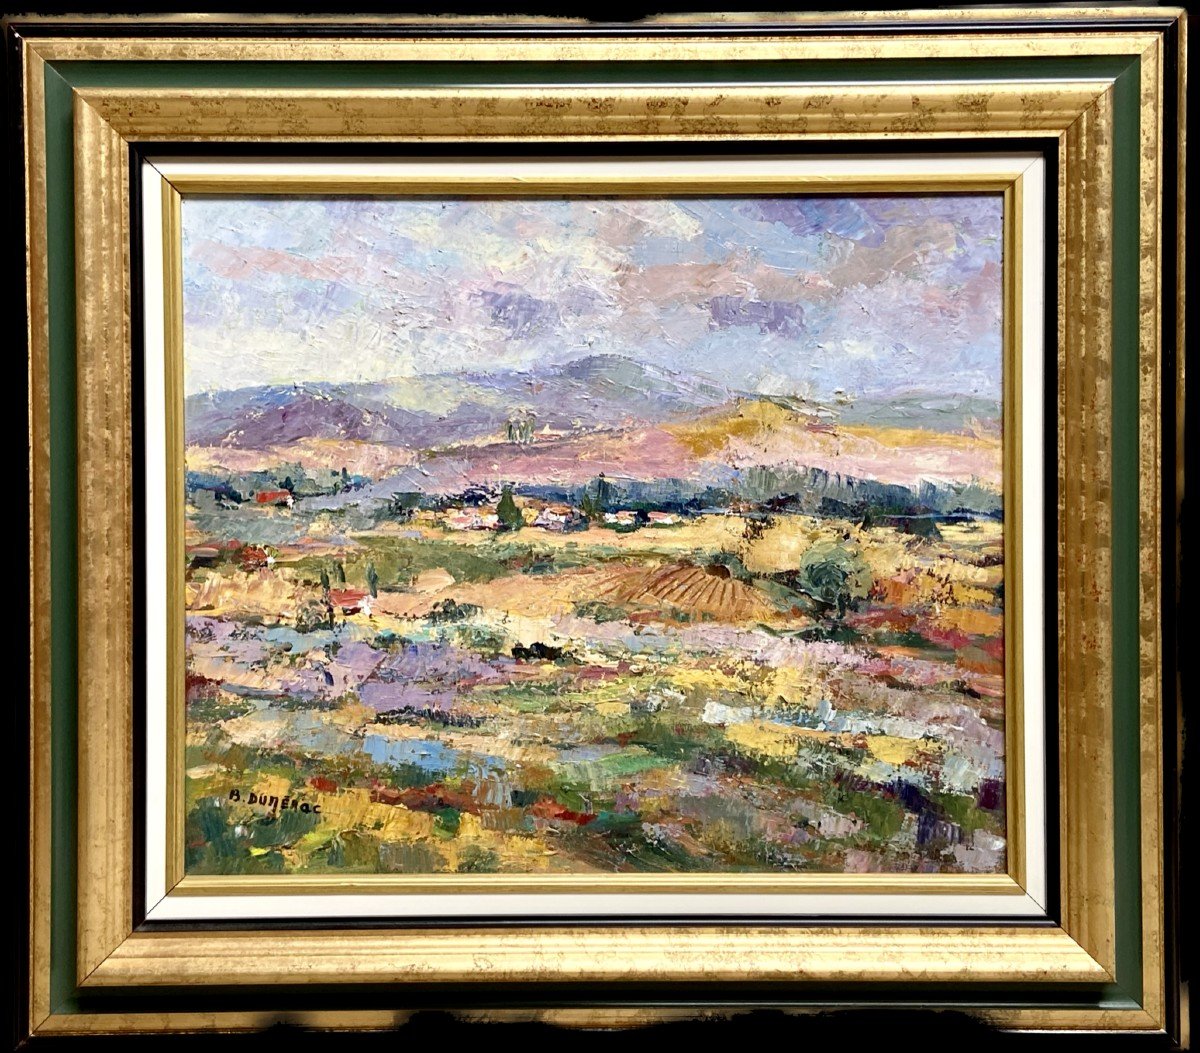 Brigitte Du Merac, Provence Landscape Painting.